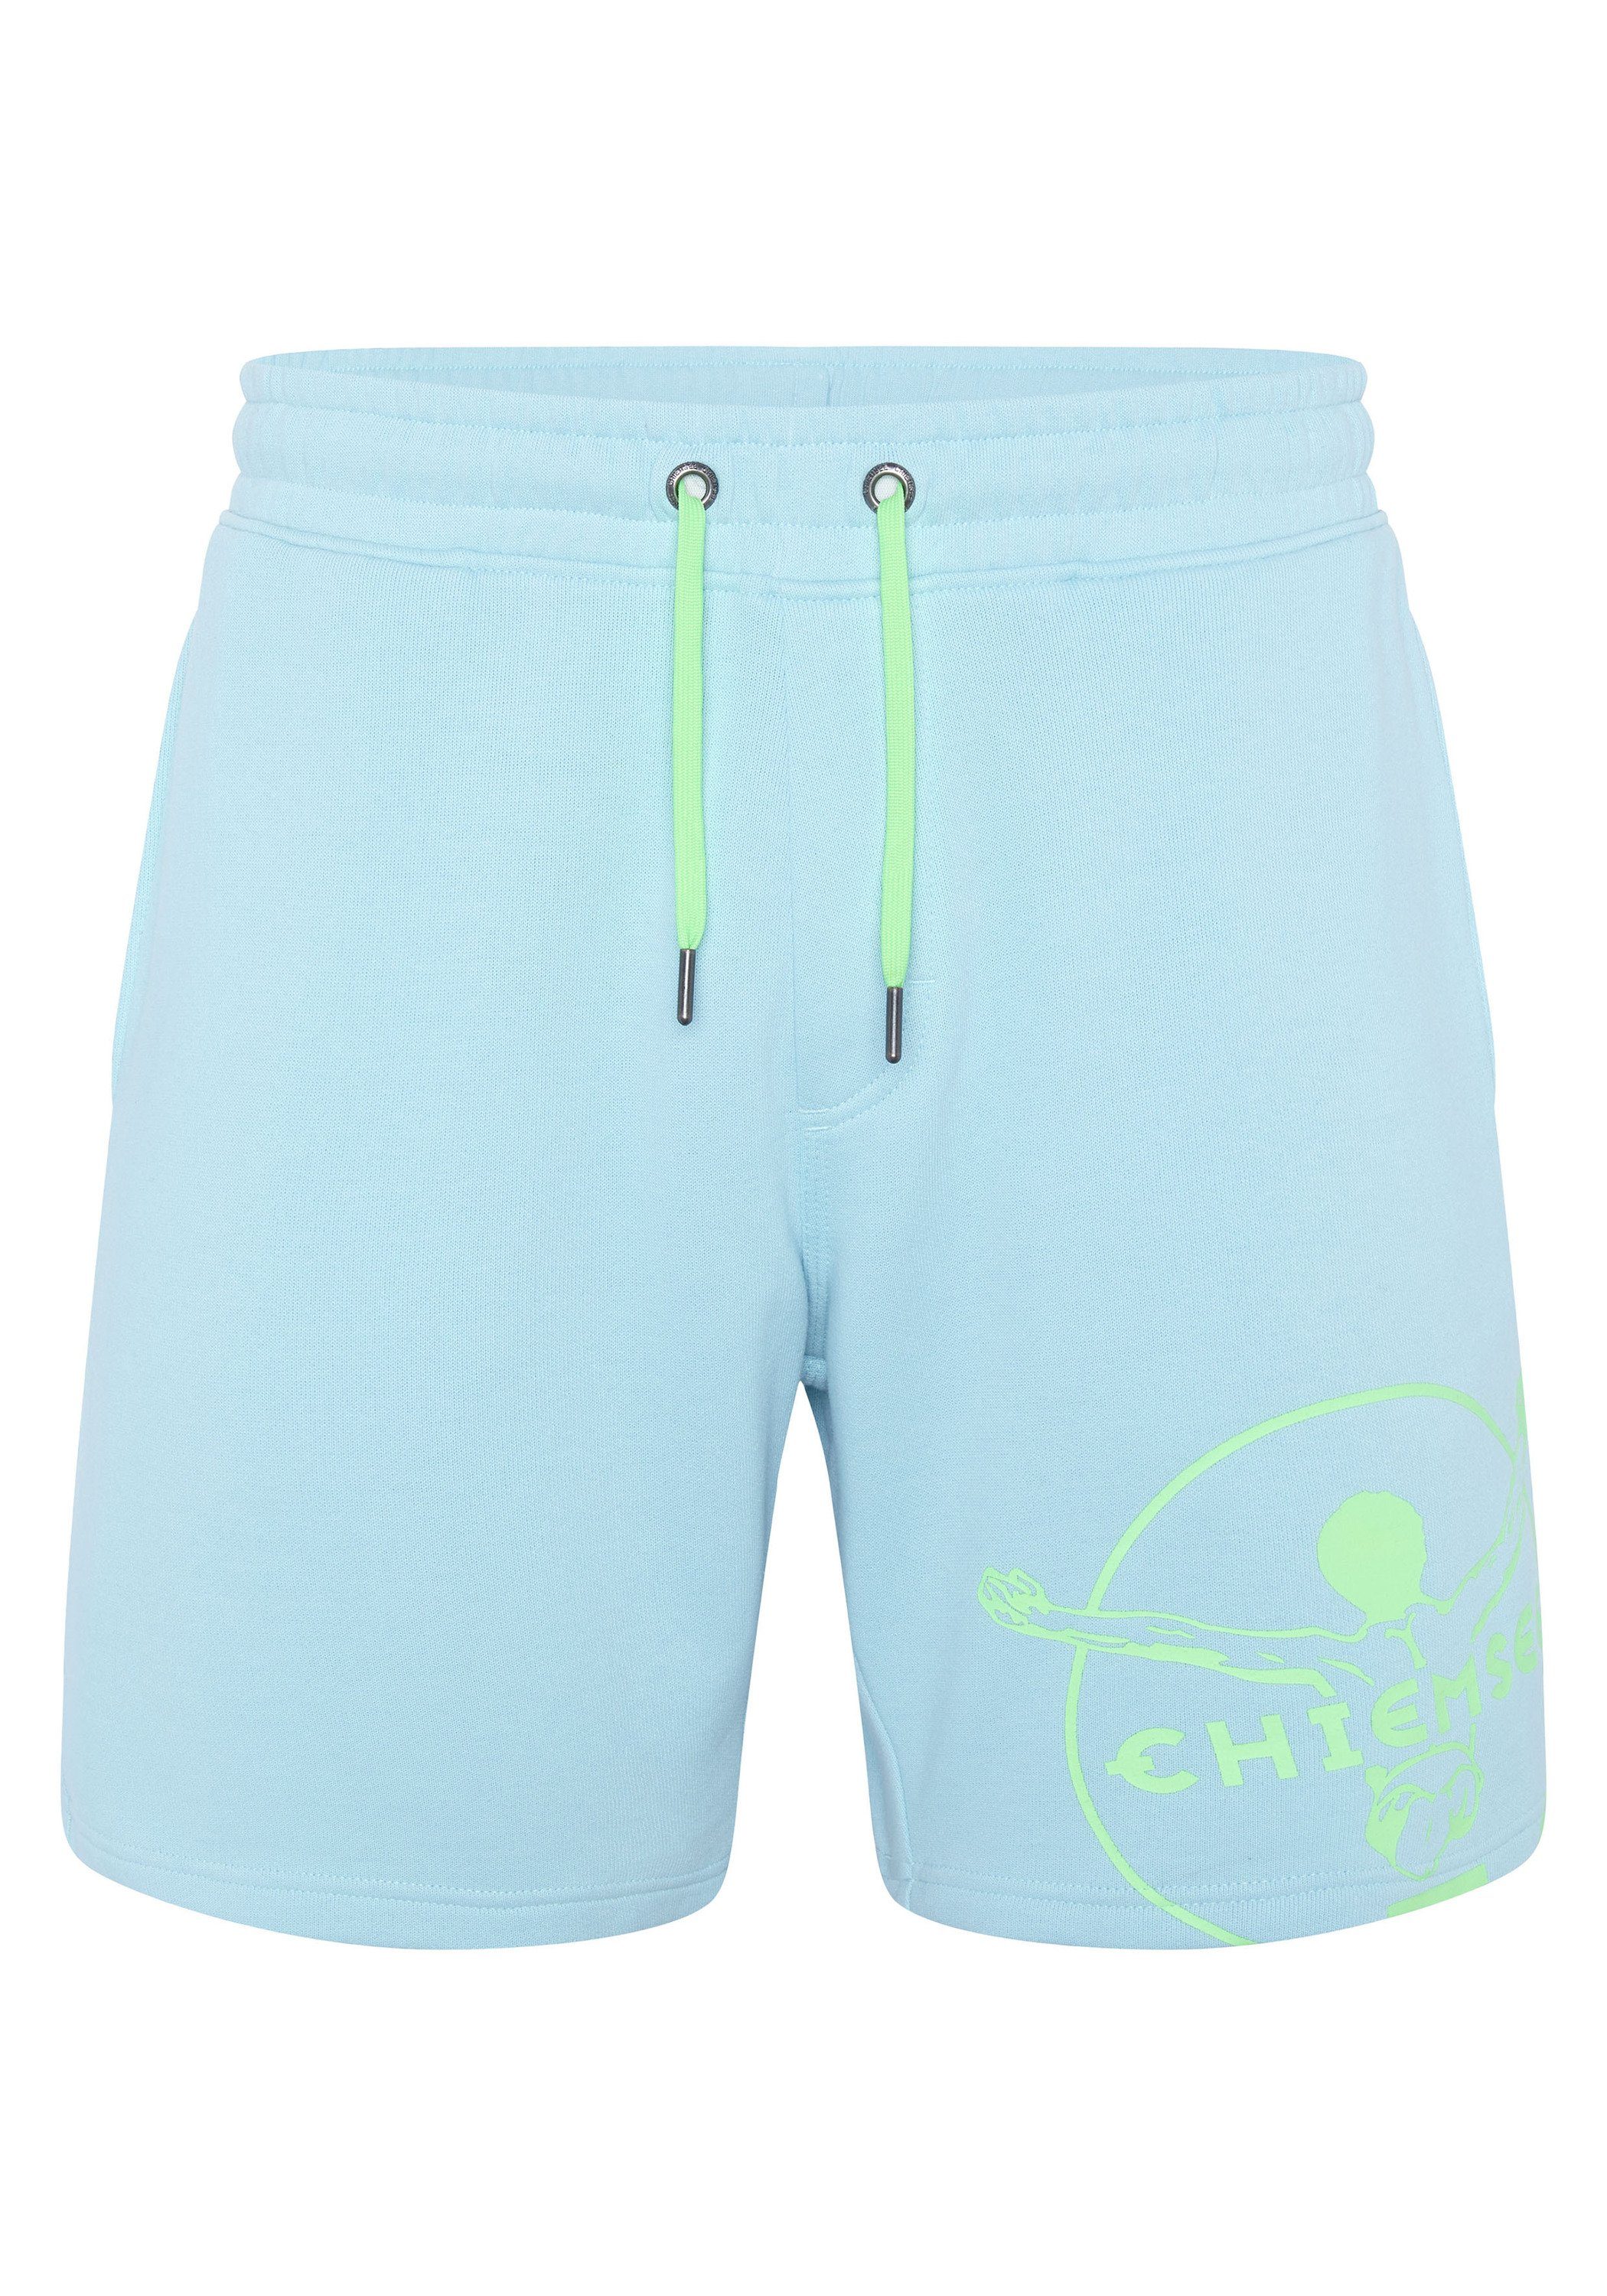 Chiemsee Bermudas Bermuda Shorts aus Baumwollmix im Label-Look 1 Sky Blue